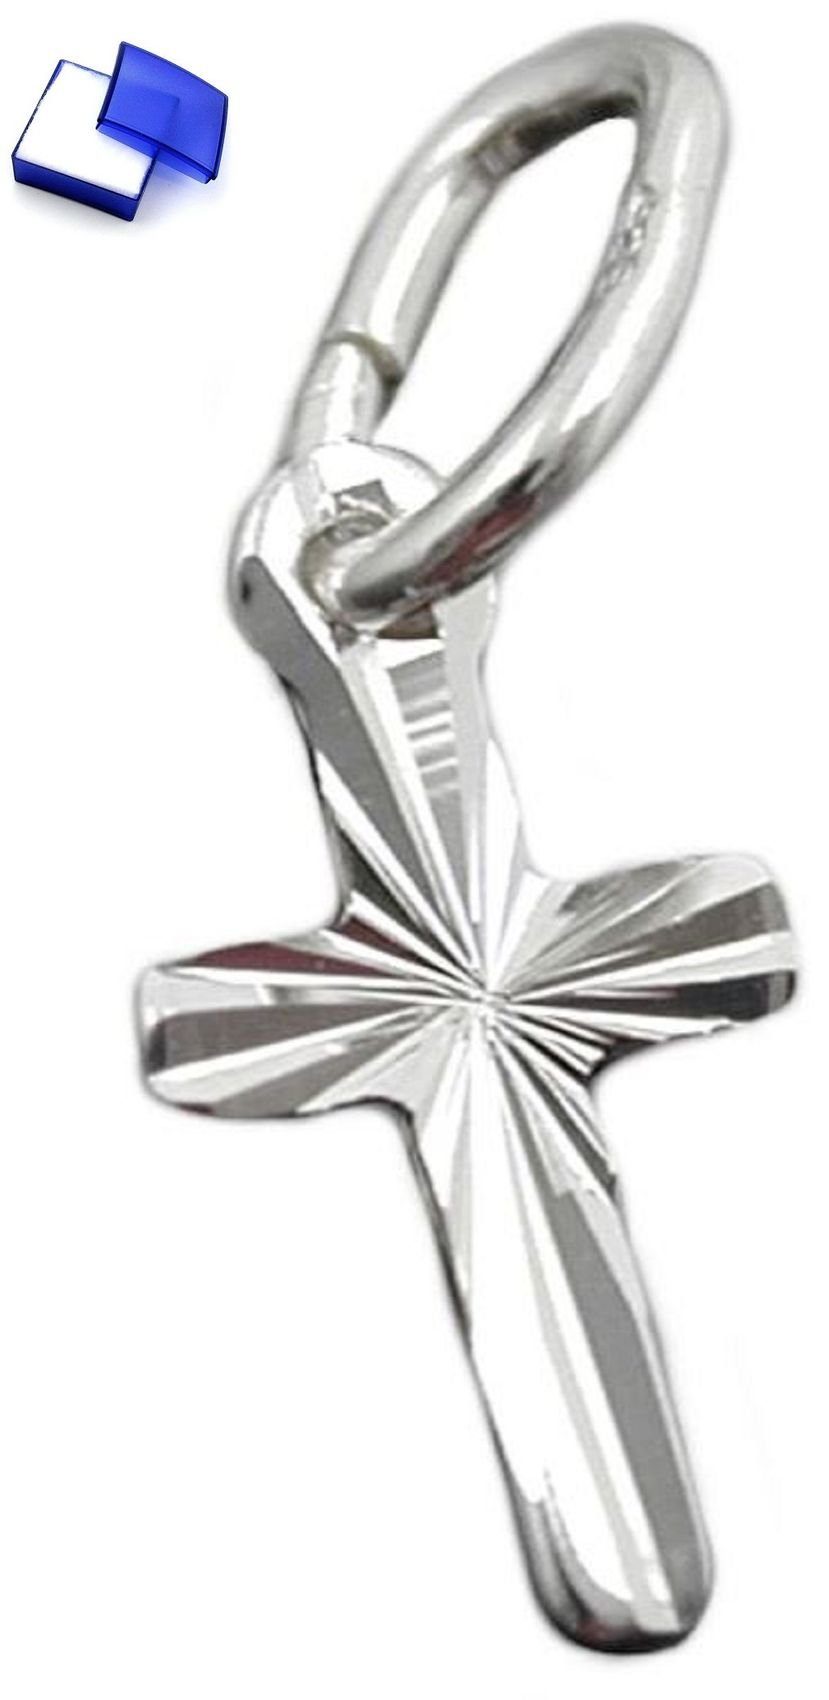 unbespielt Kreuzanhänger Religiöser Anhänger Mini Kreuz diamantiert 925 Silber 9 x 5 mm inkl. kleiner Schmuckbox, Silberschmuck für Damen und Herren